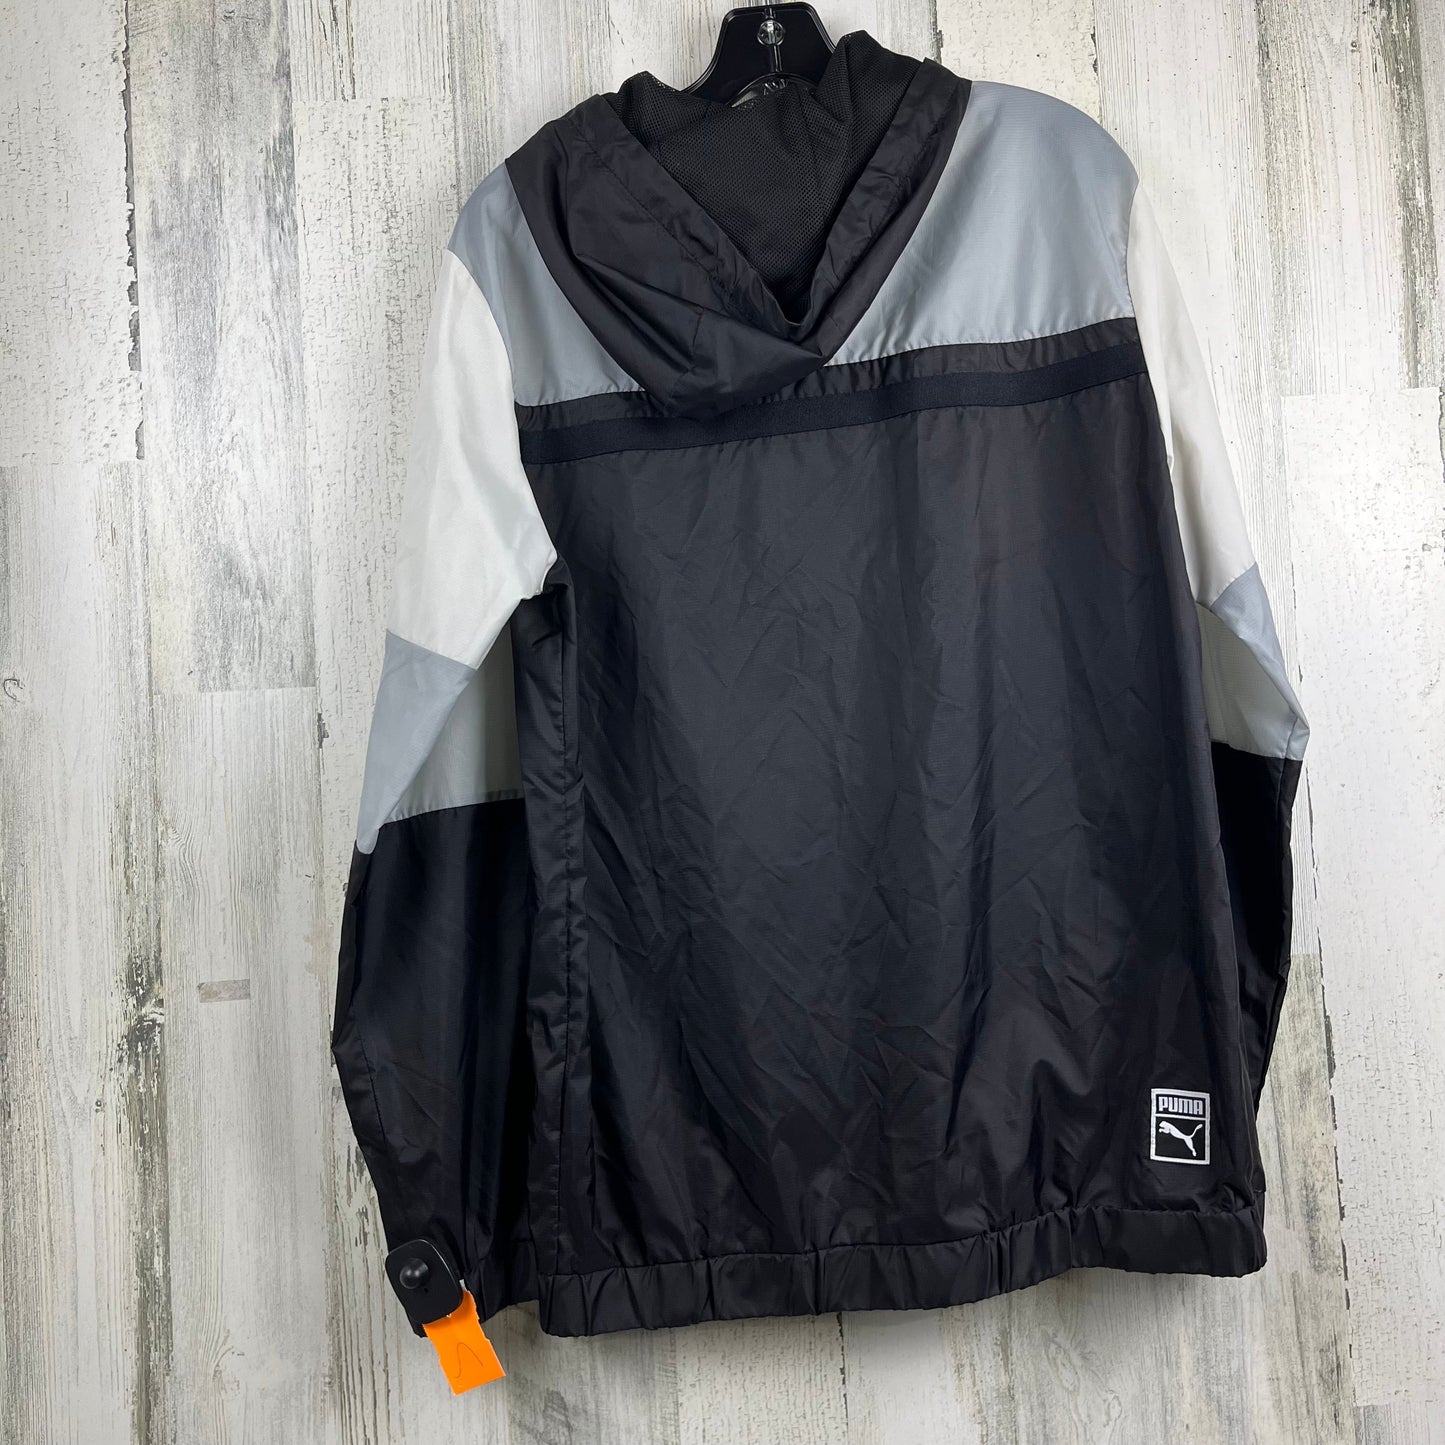 Jacket Windbreaker By Puma  Size: S